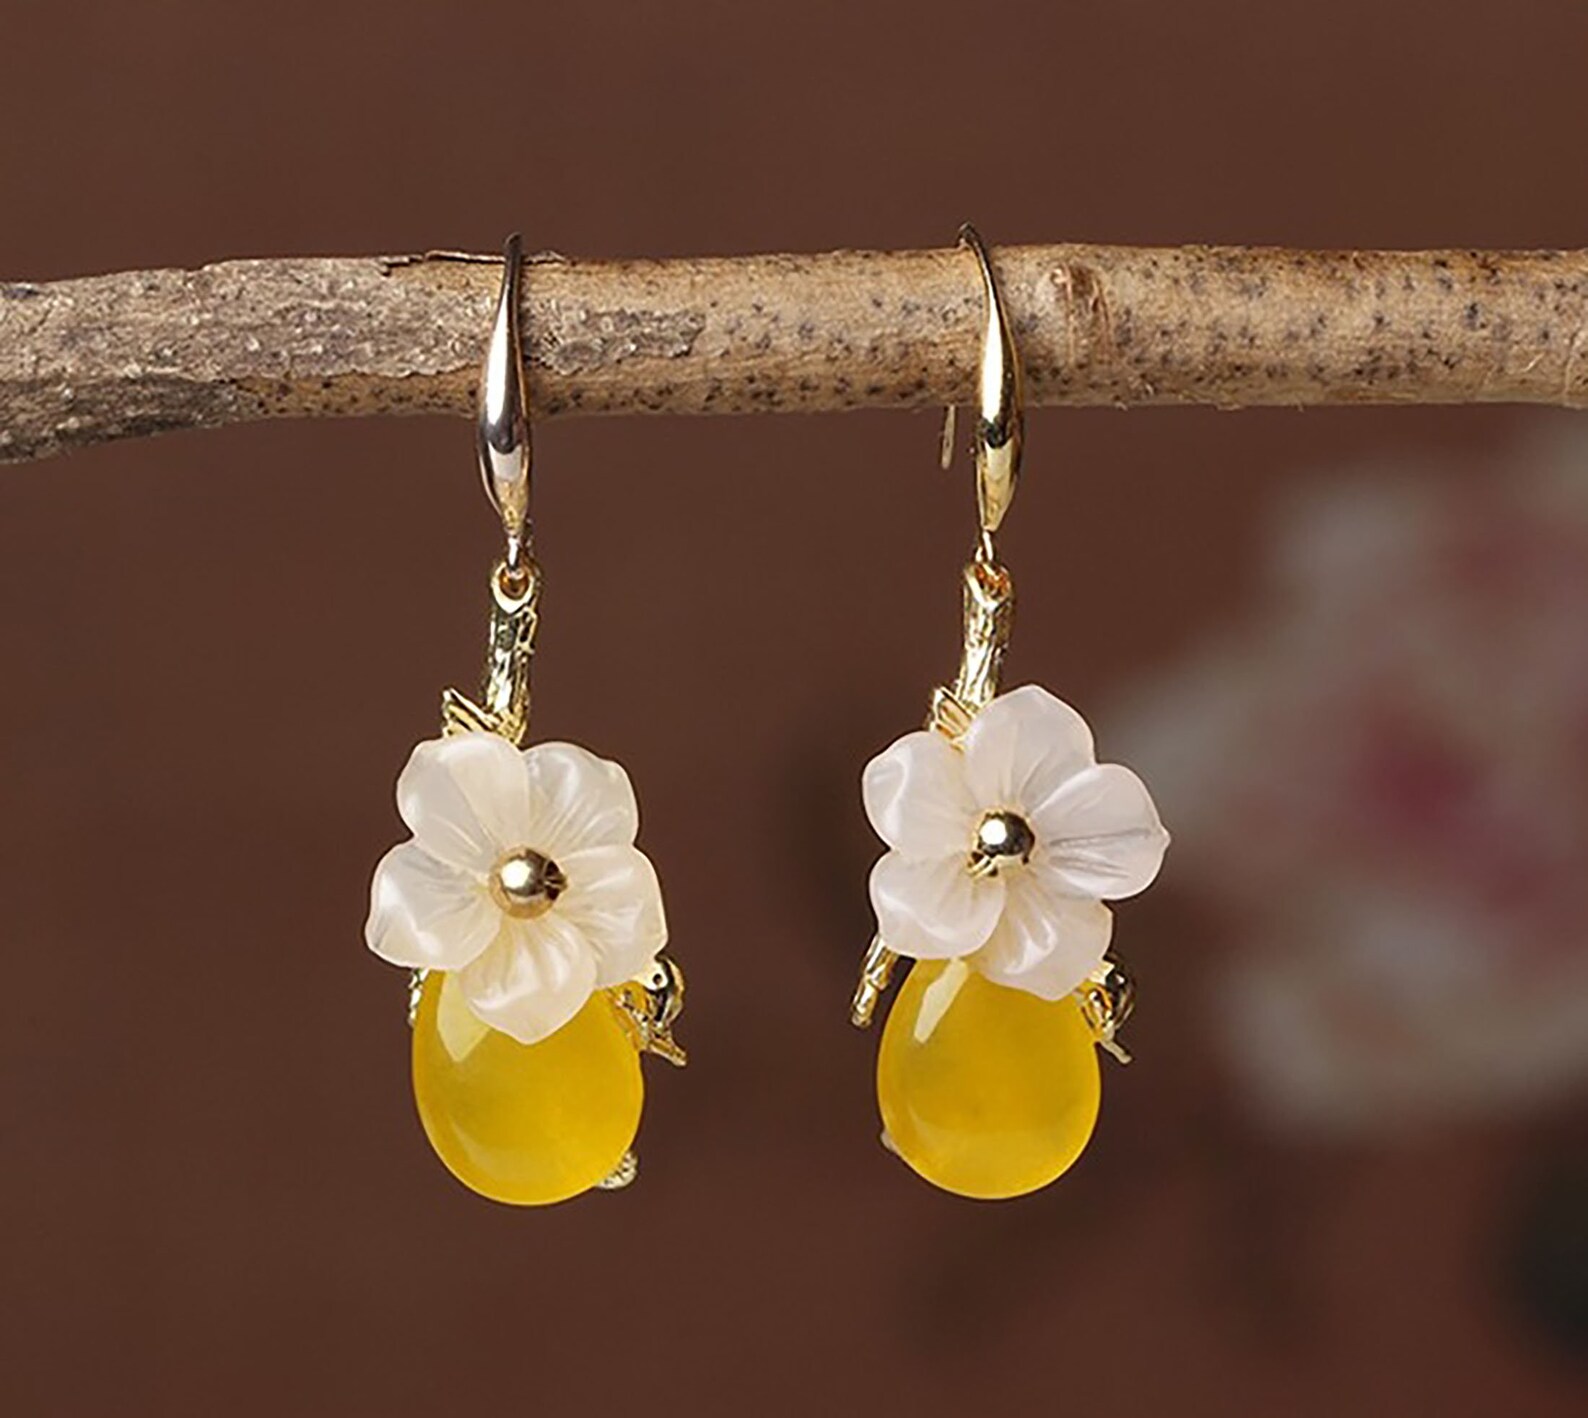 Yellow Jade Earrings 24k Gold Floral Earrings Real Jade | Etsy